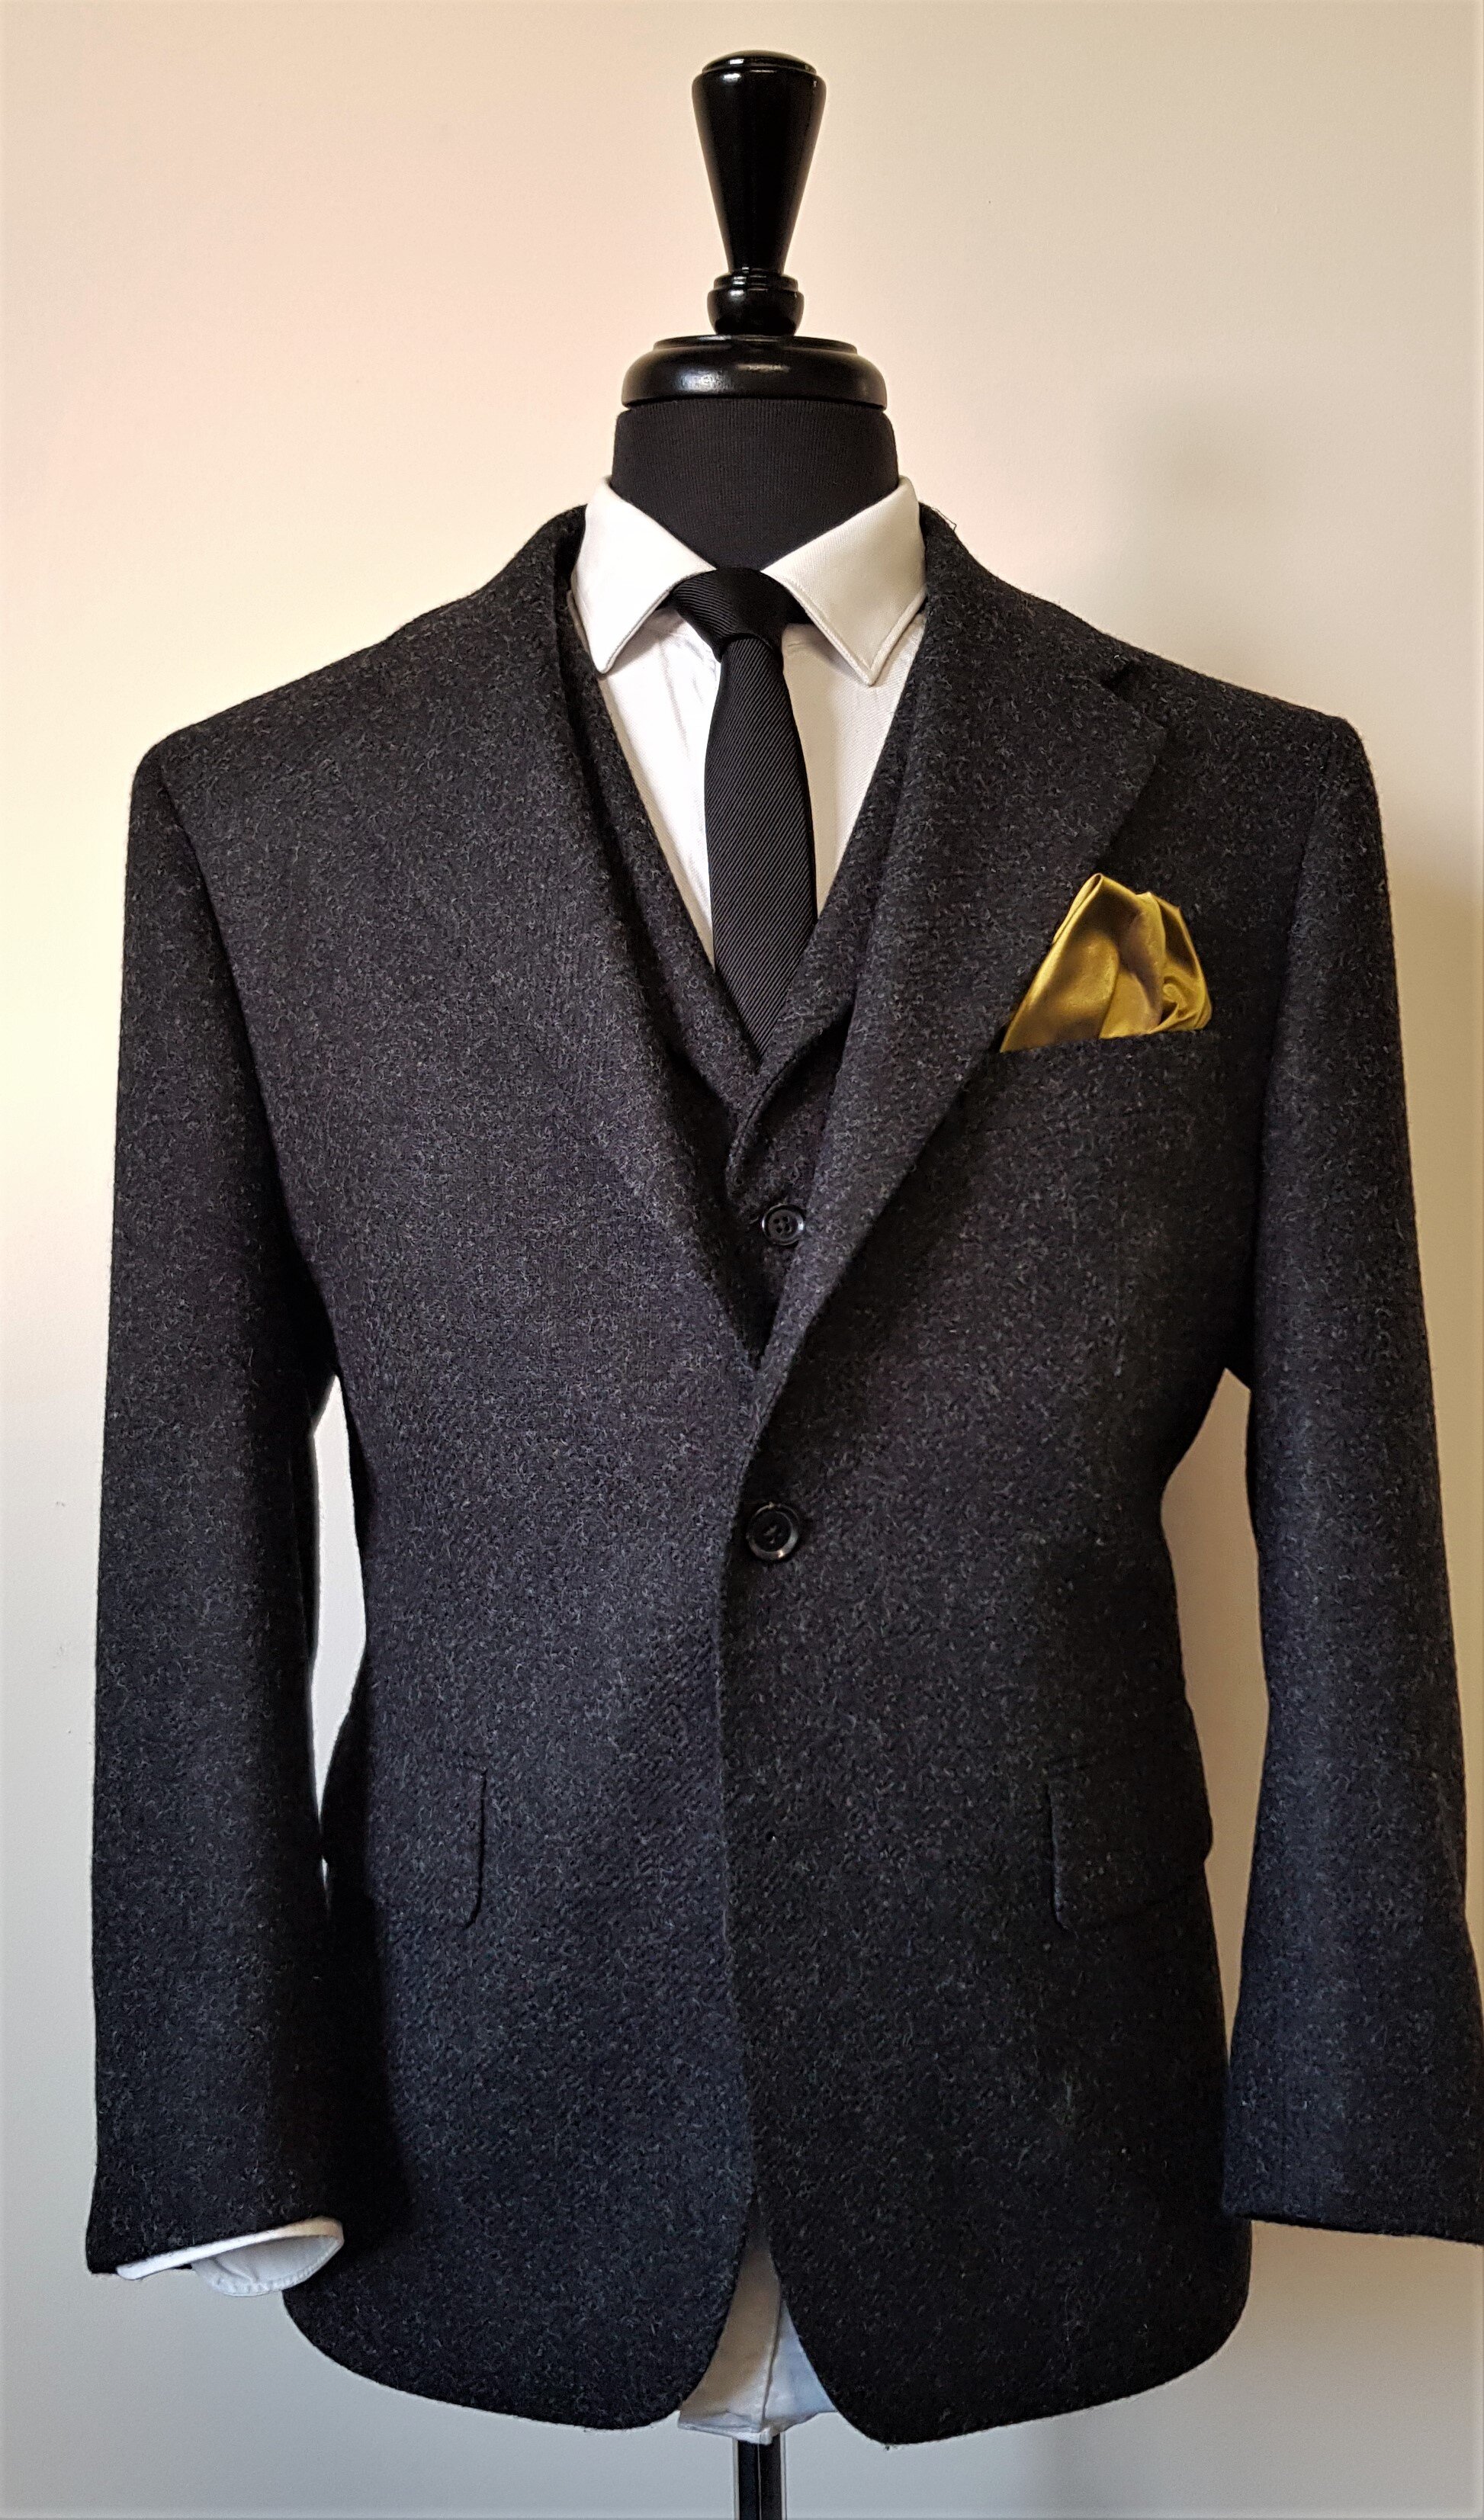 3 Piece Suit in Charcoal Shetland Tweed (2).jpg